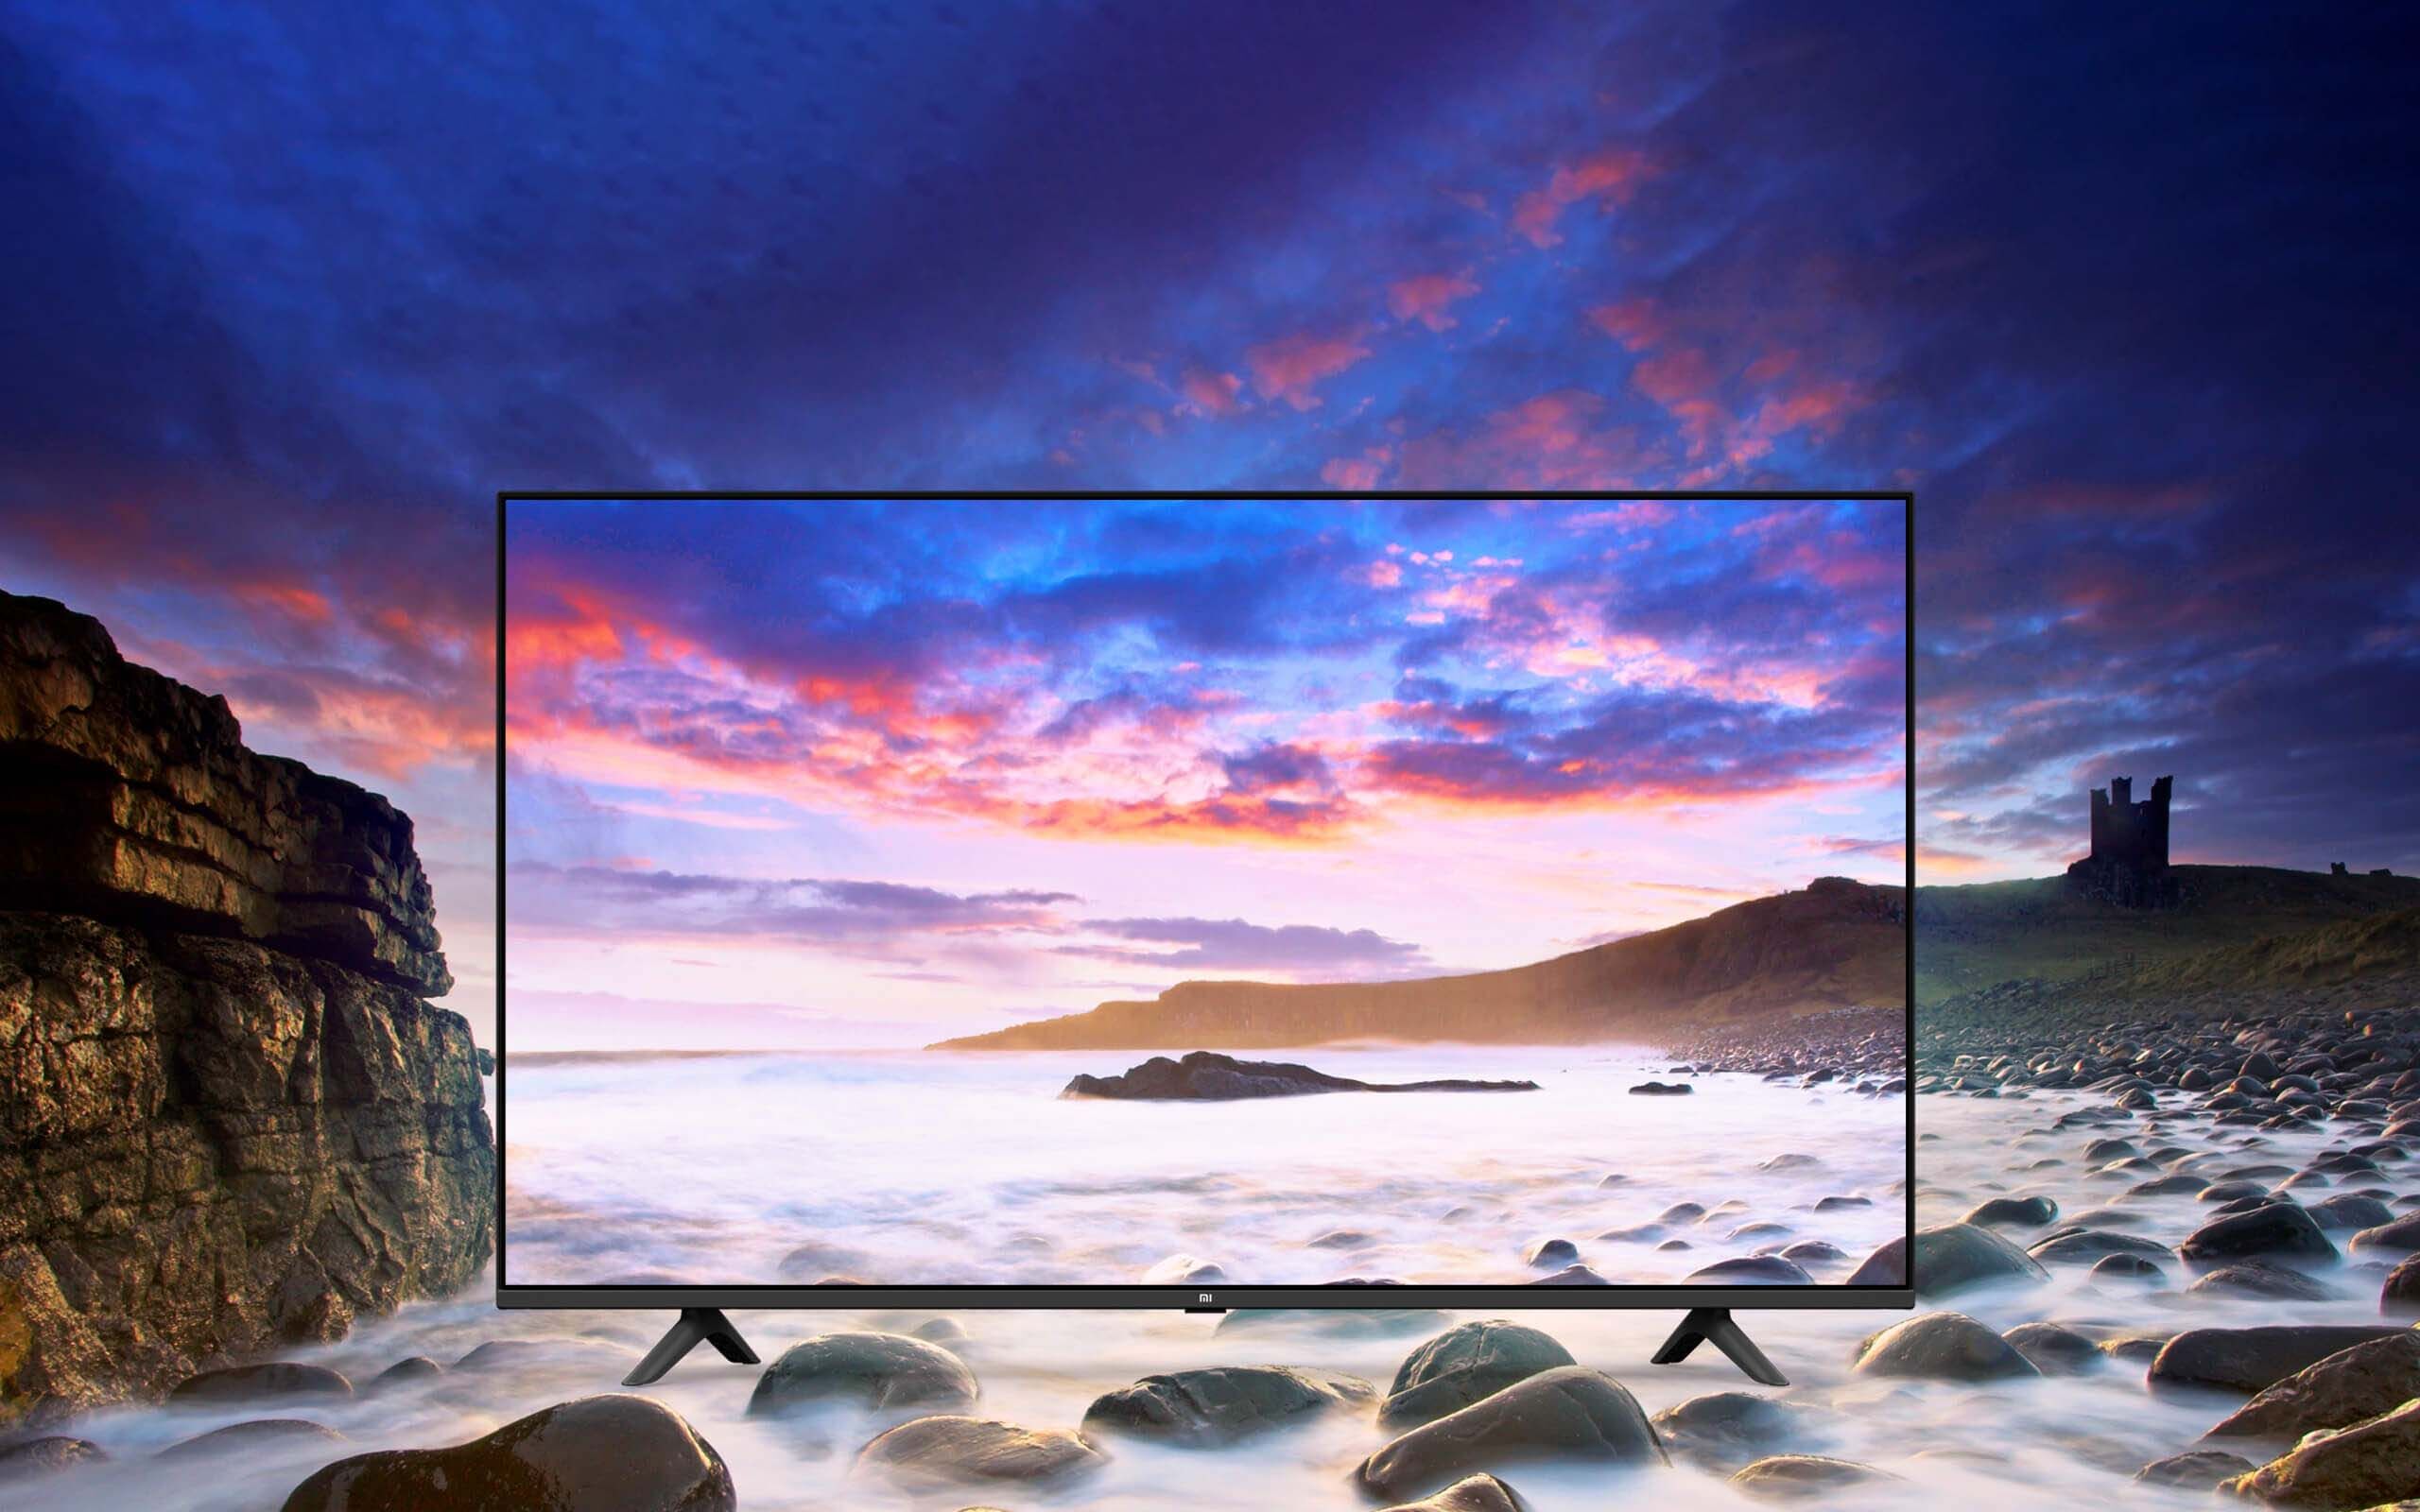 Телевизор ксиаоми хороший. Телевизор Xiaomi e55s Pro. Телевизор Xiaomi 4s 65 дюймов. Телевизор Xiaomi e55s Pro 55".